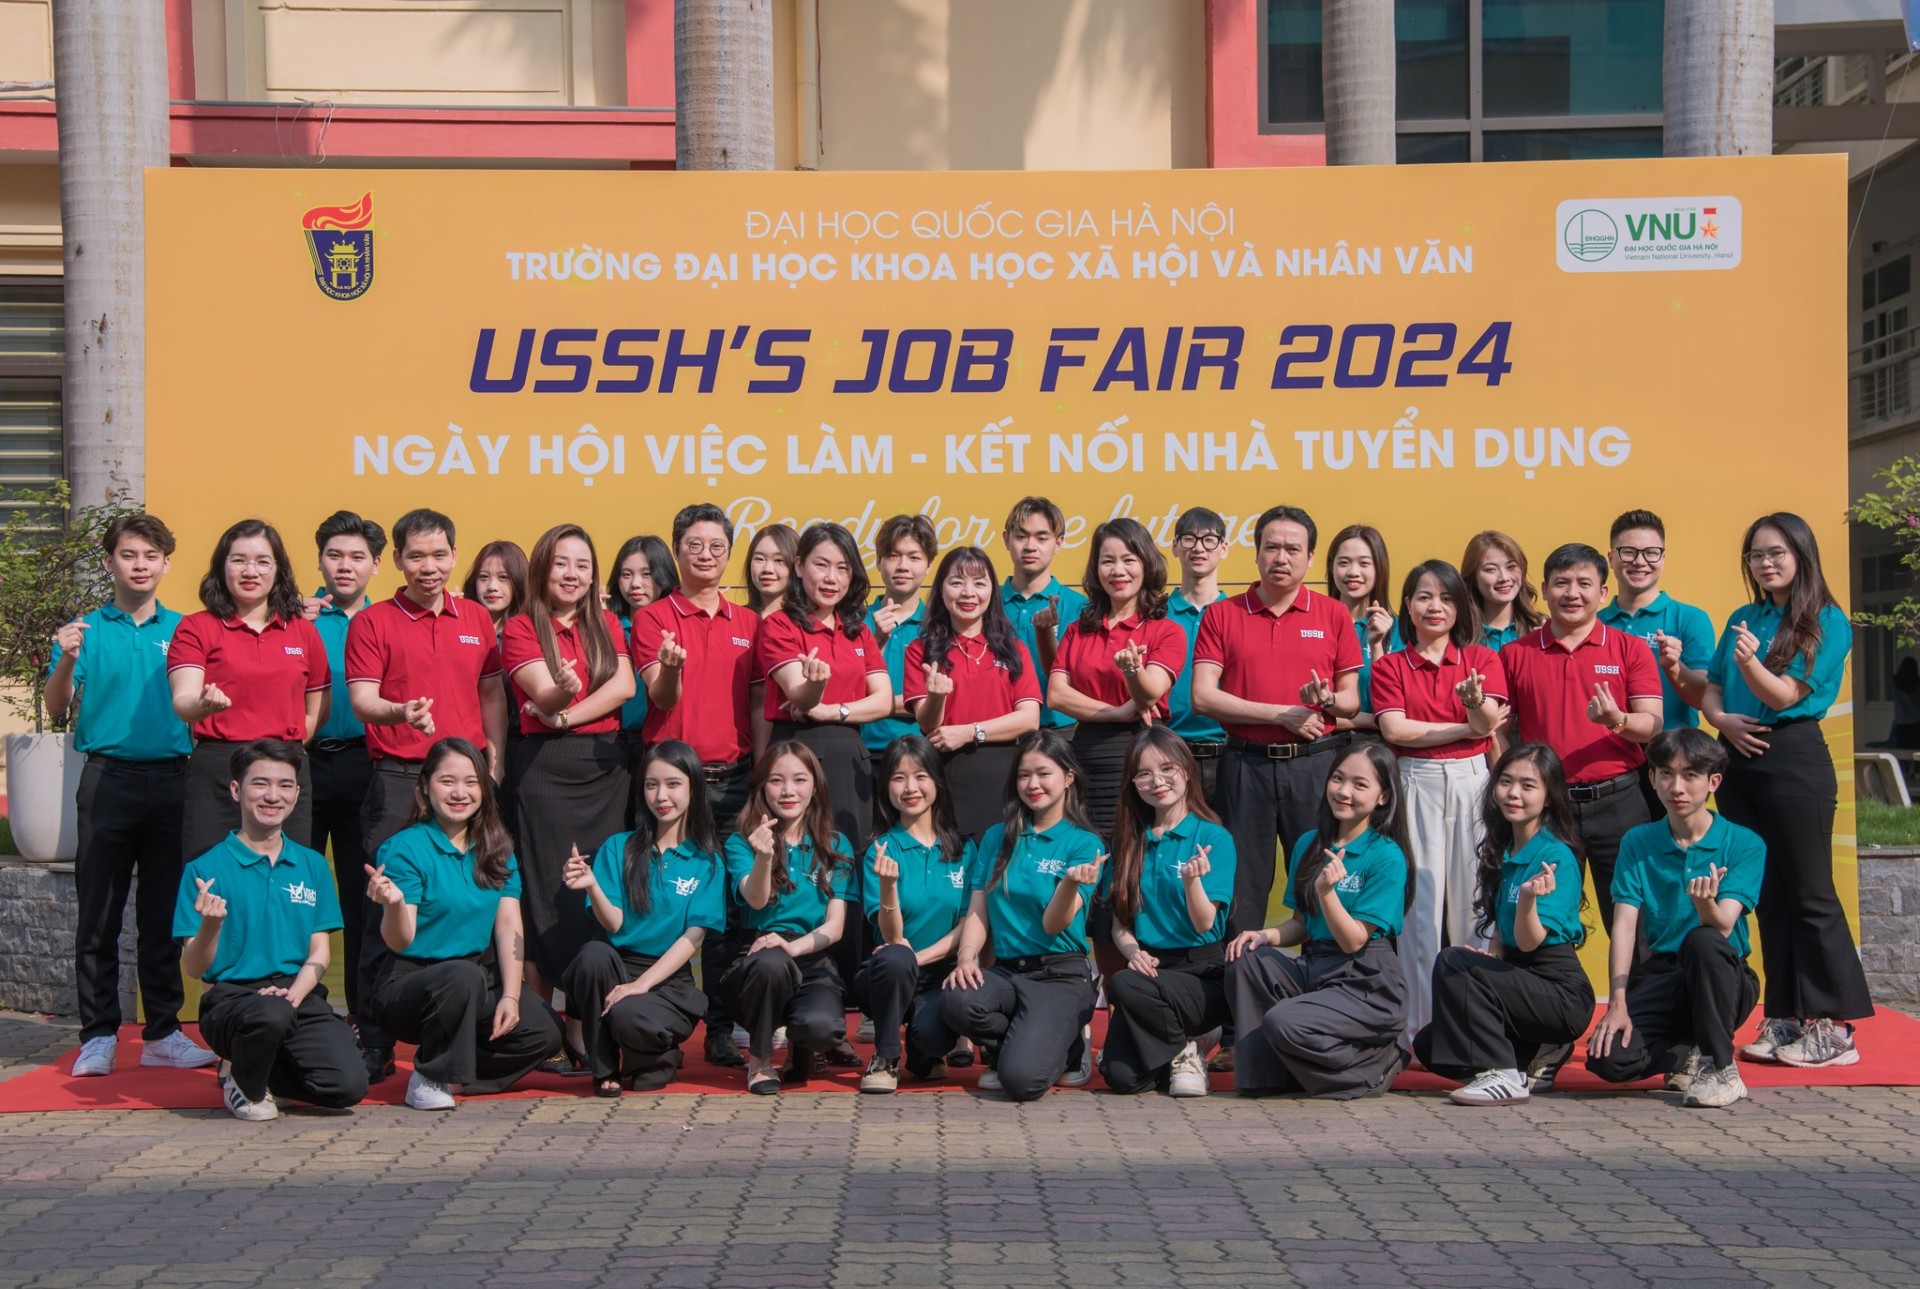 USSH Job Fair 2024: Kết nối nhà trường - nhà tuyển dụng trong đào tạo nguồn nhân lực chất lượng cao